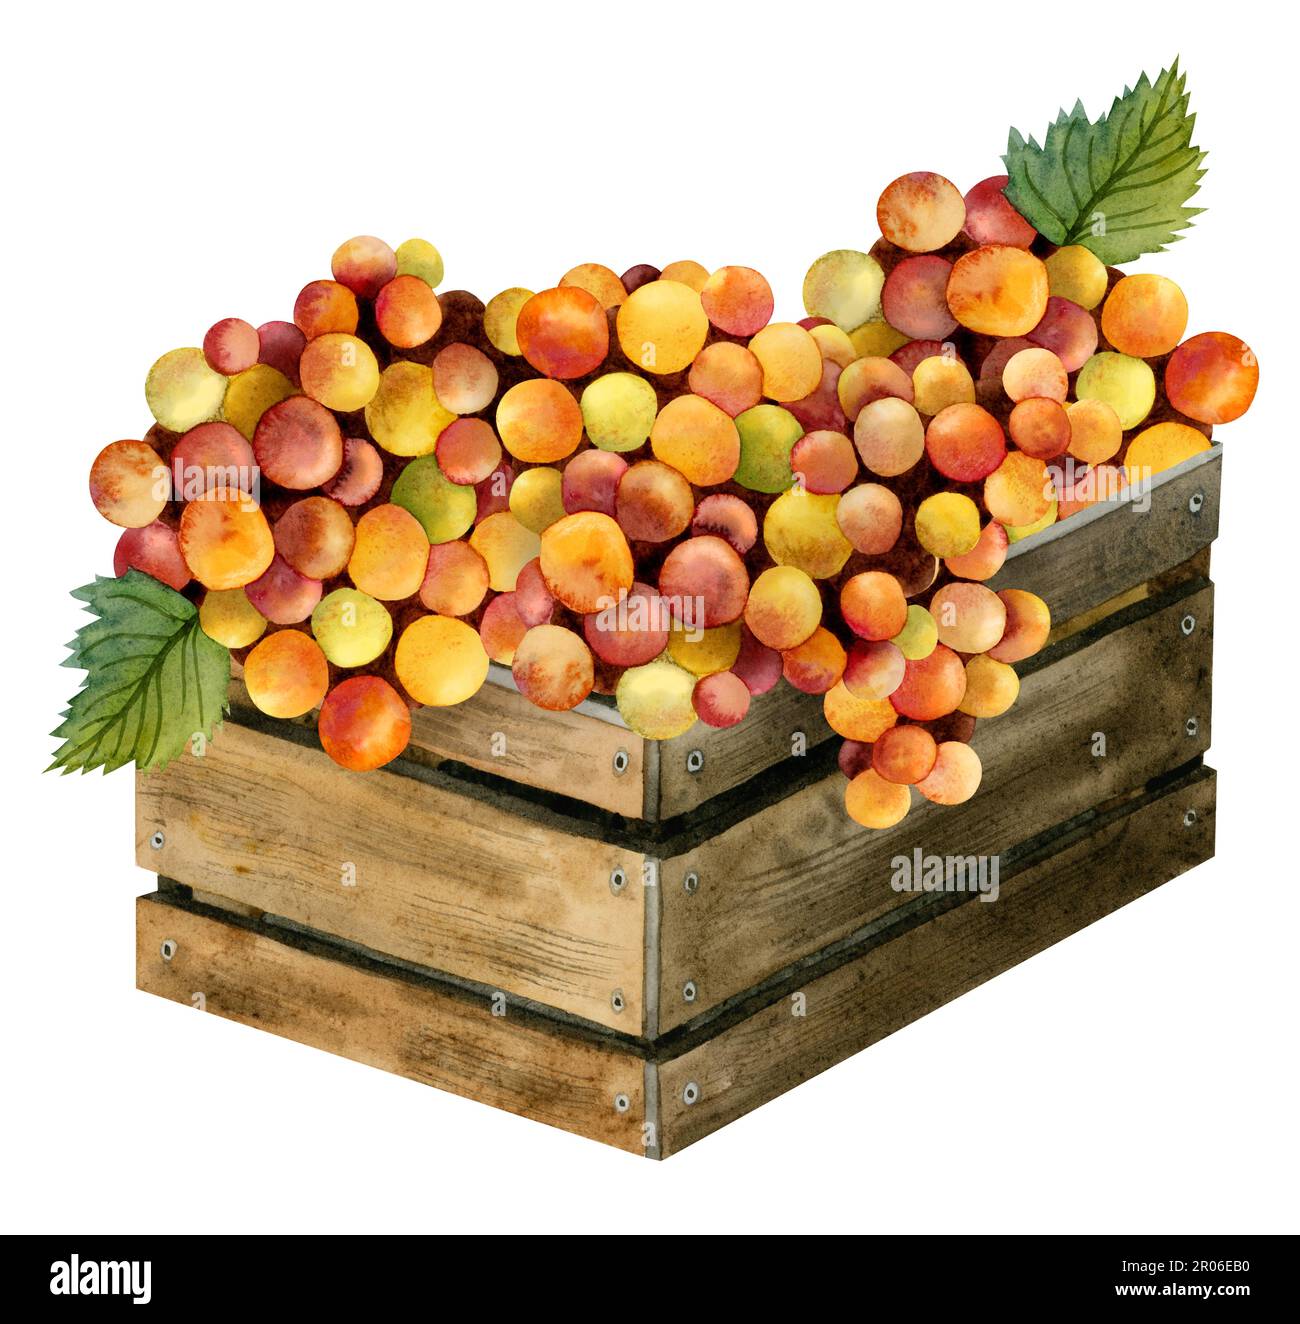 Aquarelle jaune rouge orange raisins récoltés dans rustique boîte en bois illustration isolée sur blanc. Design italien ou israélien de la composition de la vinerie. Français Banque D'Images